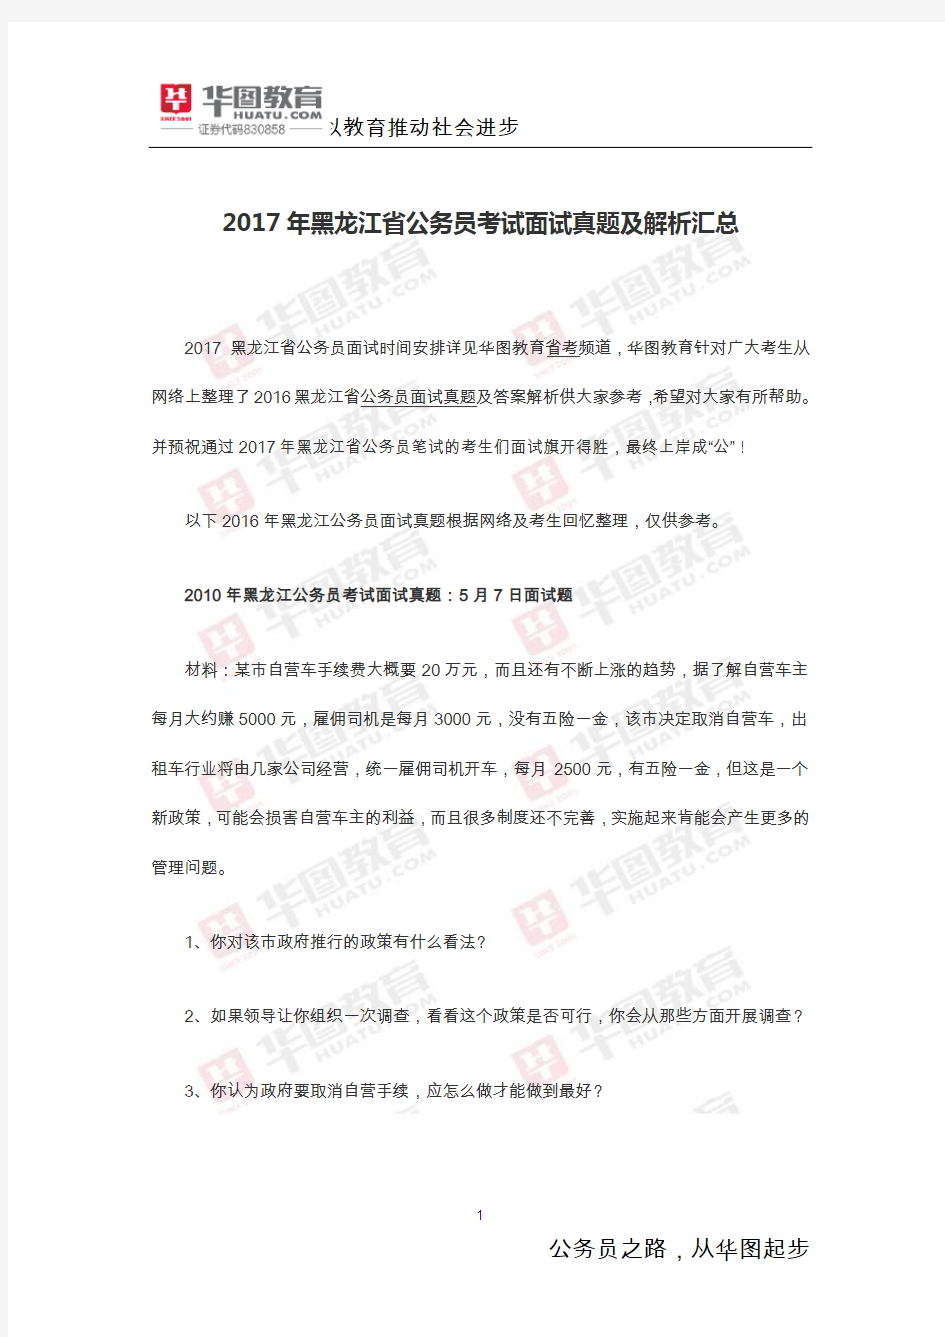 2017年黑龙江省公务员考试面试真题及解析汇总